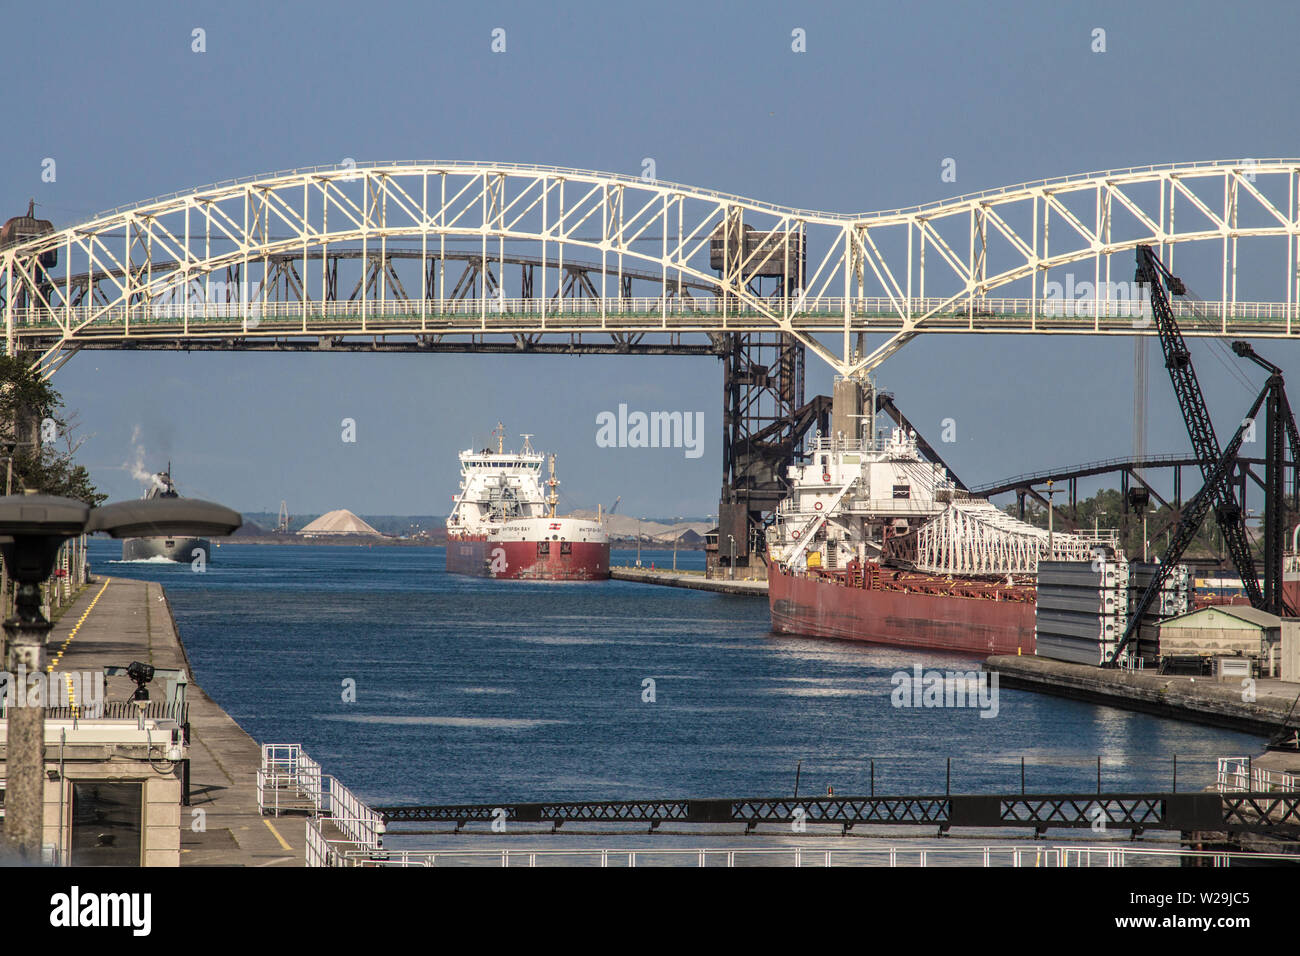 Sault Sainte Marie, Michigan, USA - grande ligne de cargos des Grands Lacs jusqu'aux écluses Soo sous le pont International. Banque D'Images